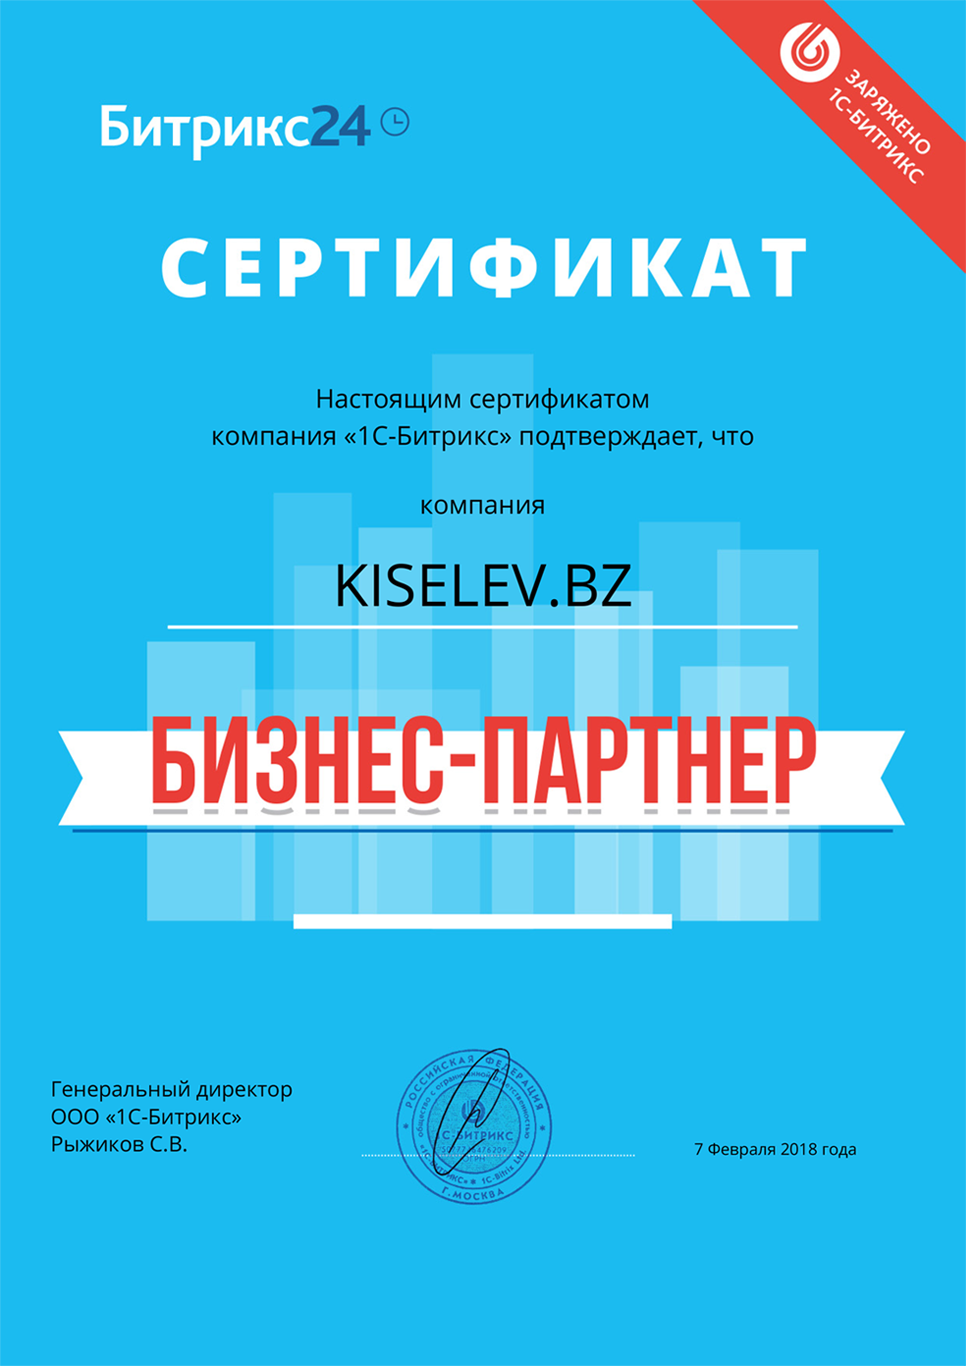 Сертификат партнёра по АМОСРМ в Рославле